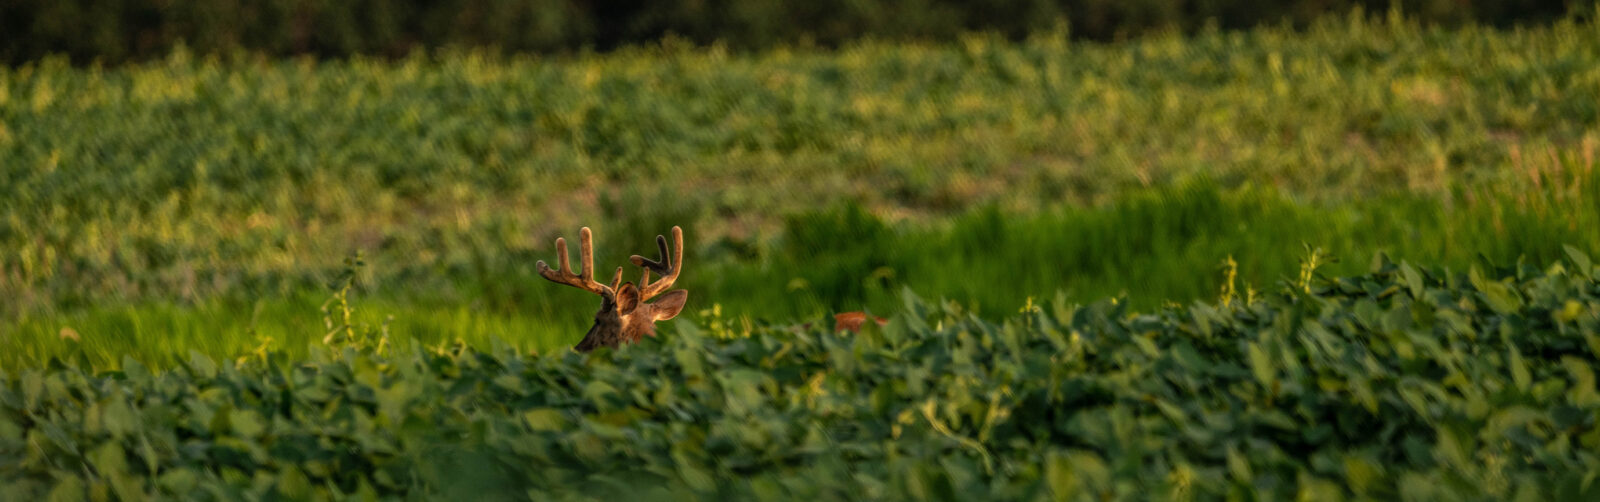 Deer almost hidden in a field